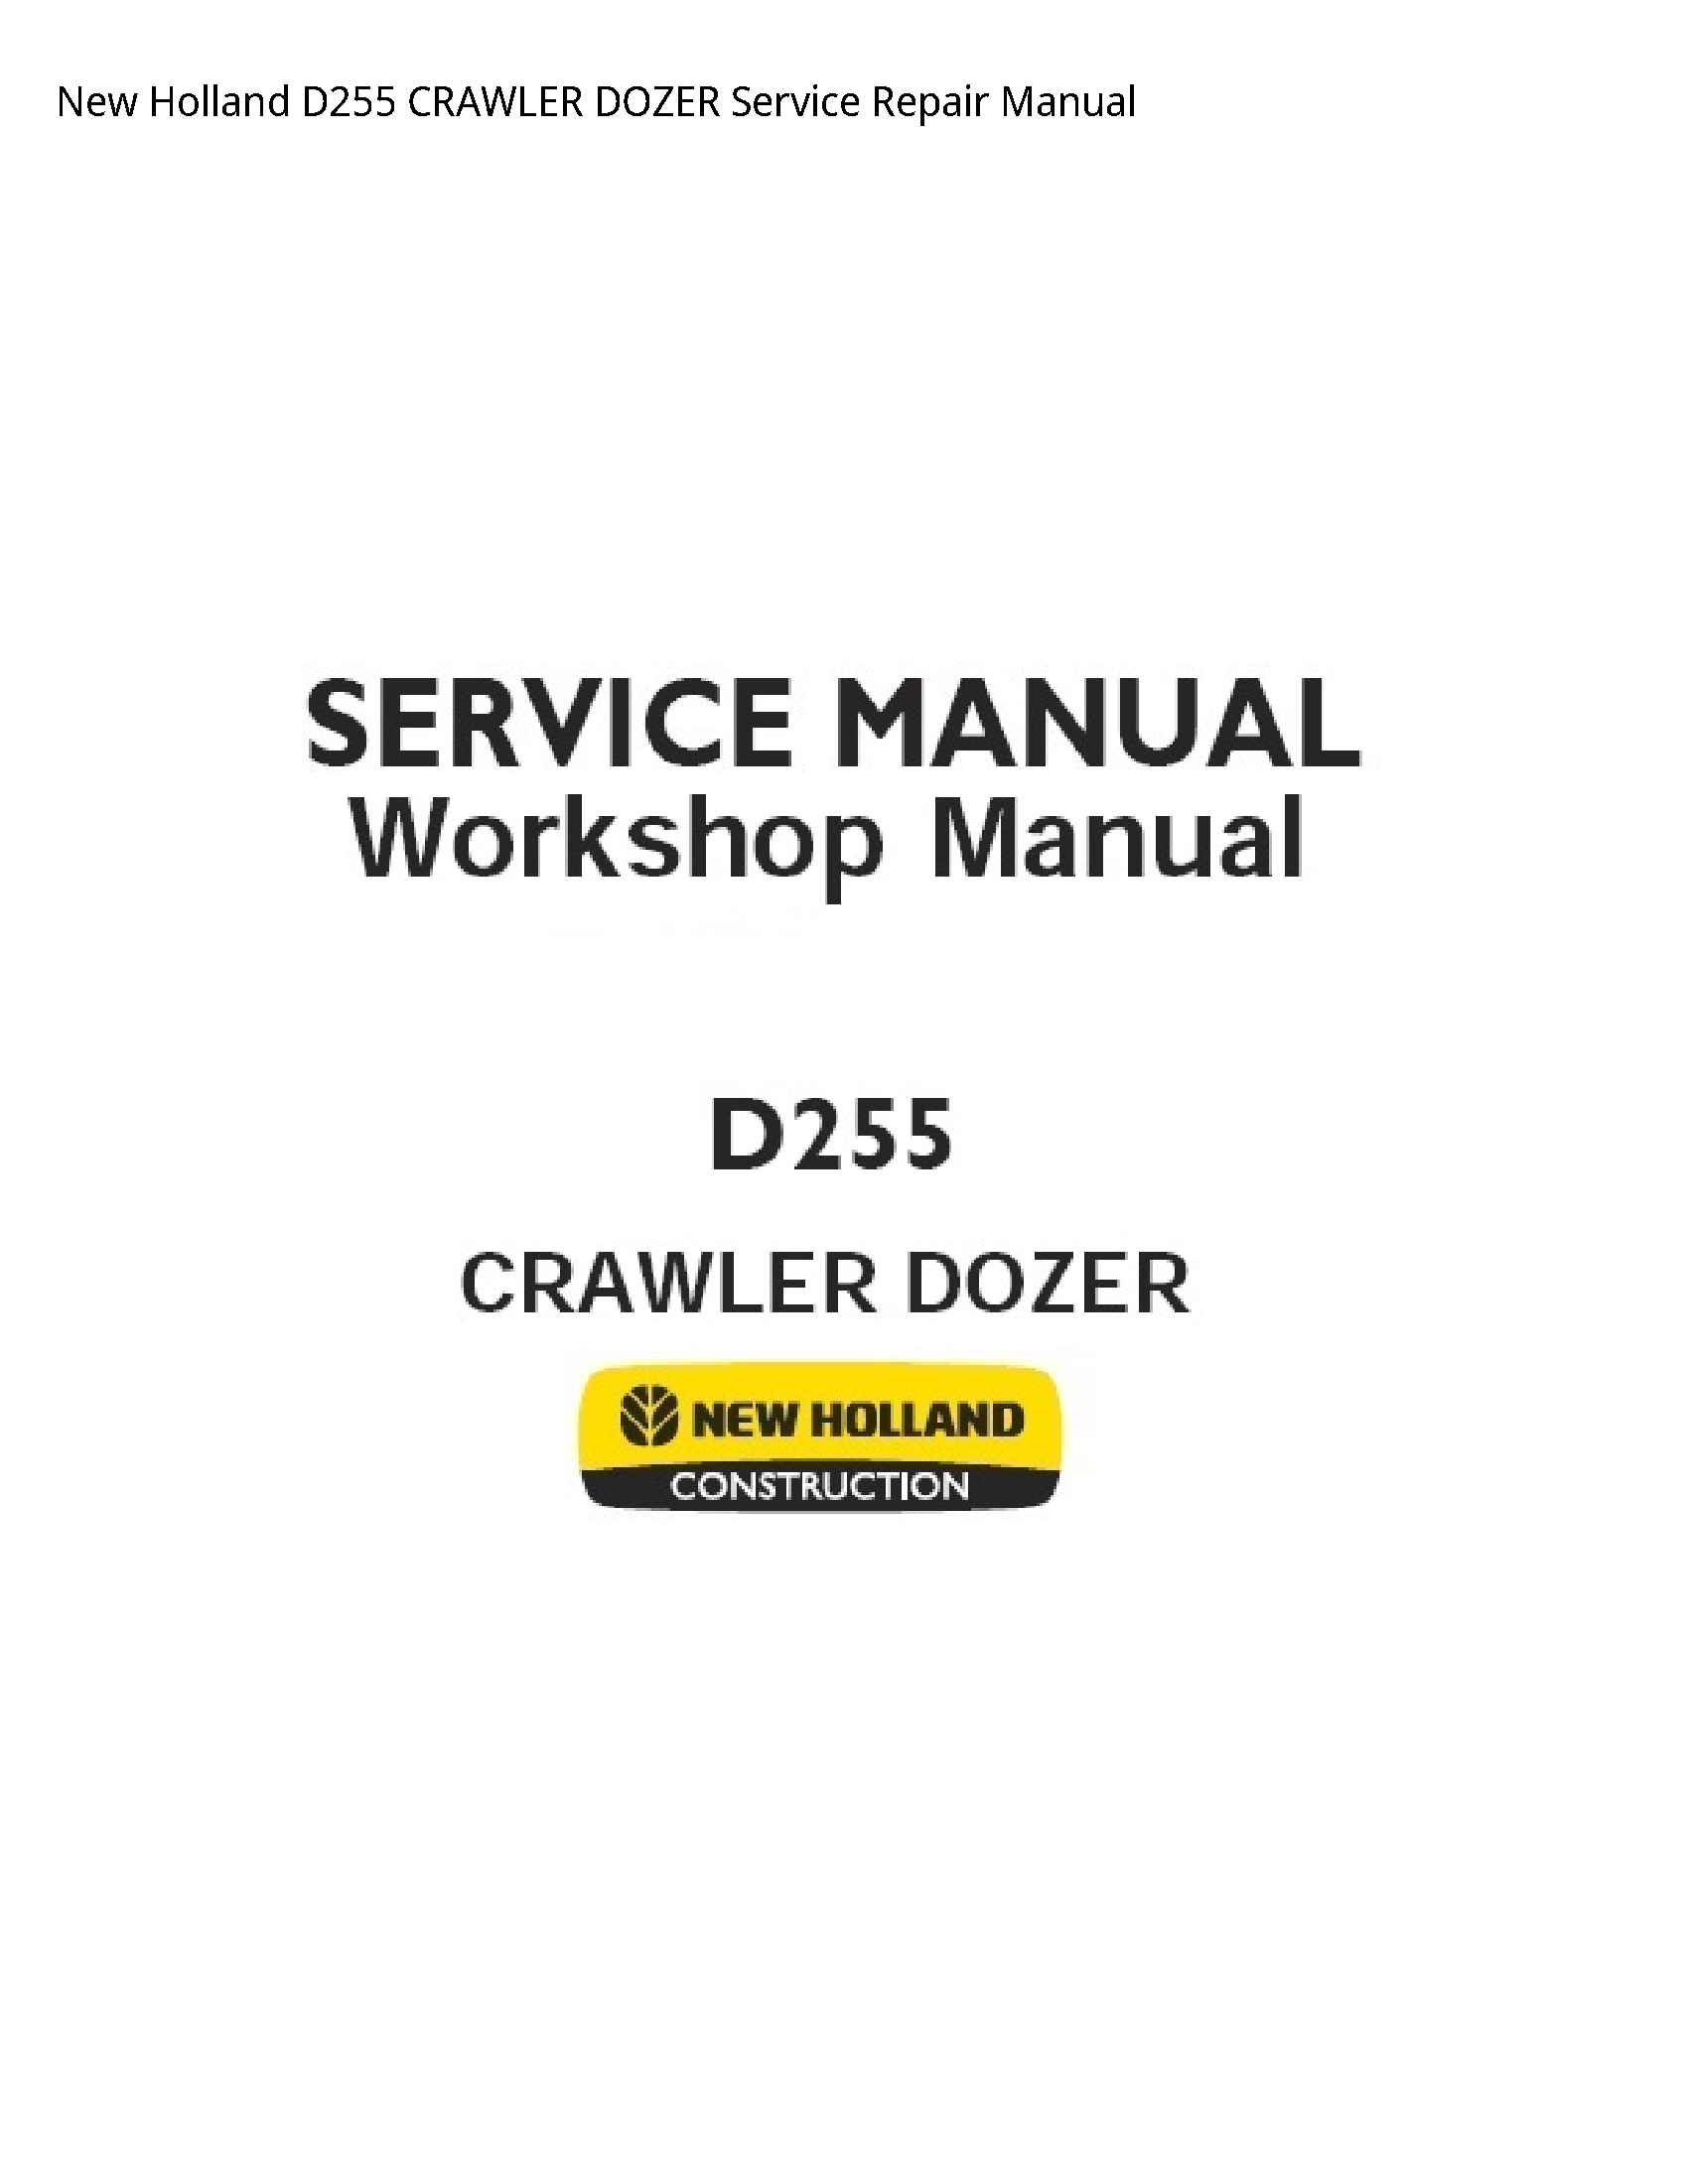 New Holland D255 CRAWLER DOZER manual